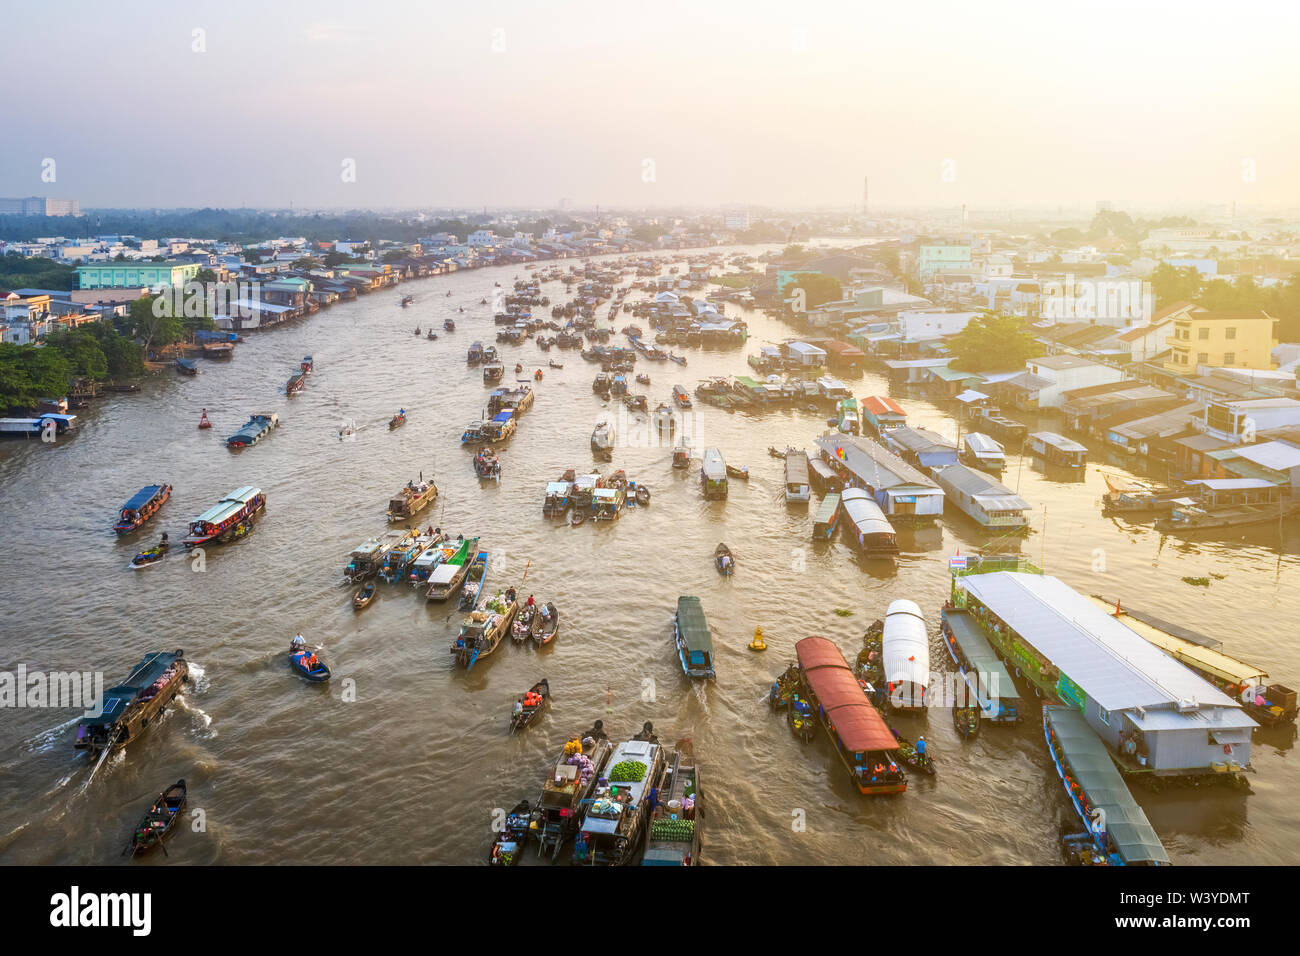 Vue aérienne du marché flottant de Cai Rang, delta du Mékong, Can Tho, Vietnam. Même Damnoen Saduak thaïlandais et Martapura de l'Indonésie. Banque D'Images